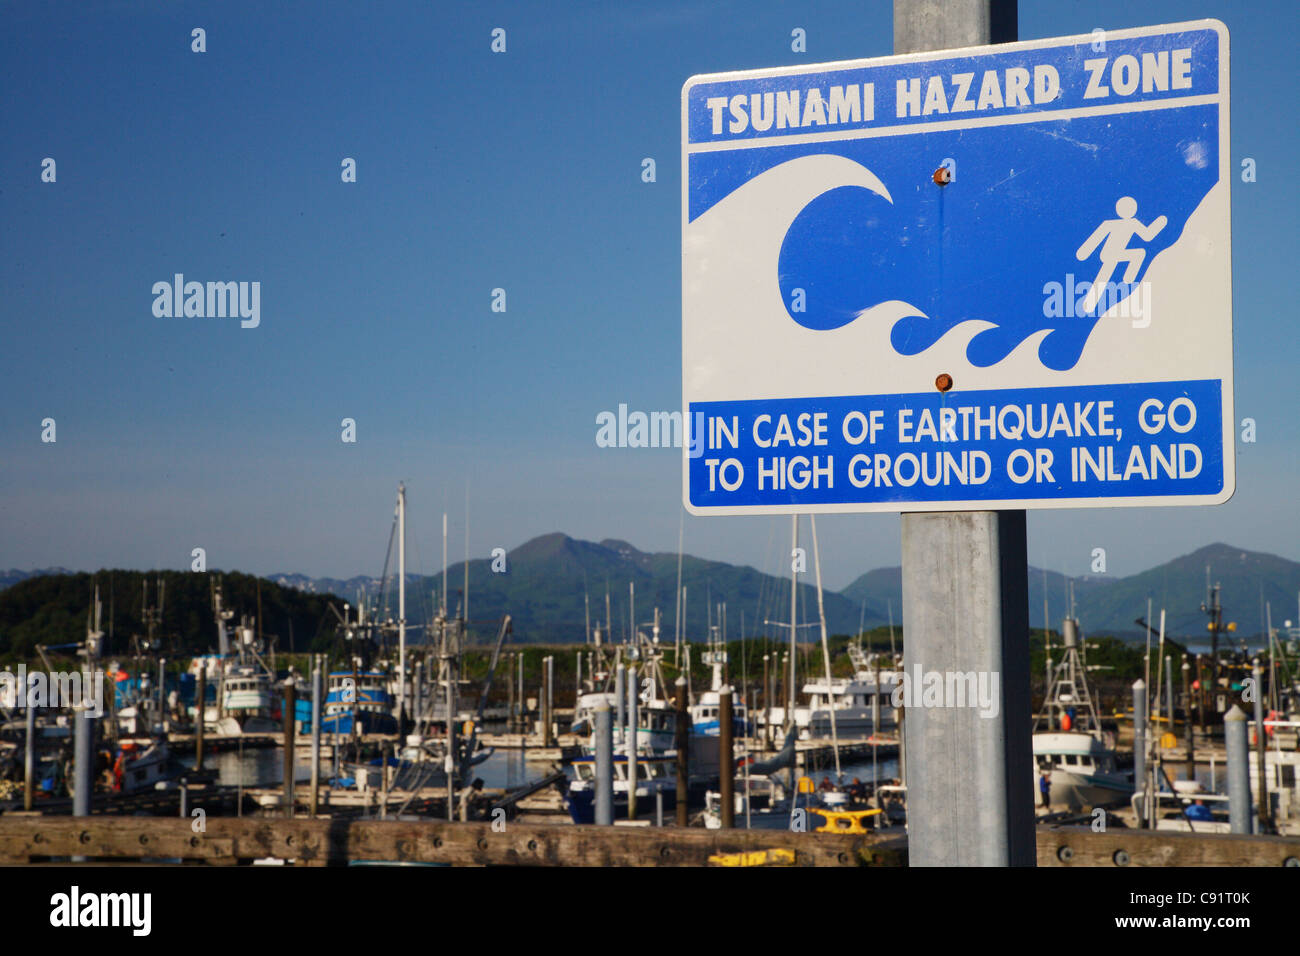 Kodiak Island Alaska kleines Boot Hafen Tsunami Gefahr Warnung Zeichen Erdbeben Sicherheit Naturkatastrophe Stockfoto